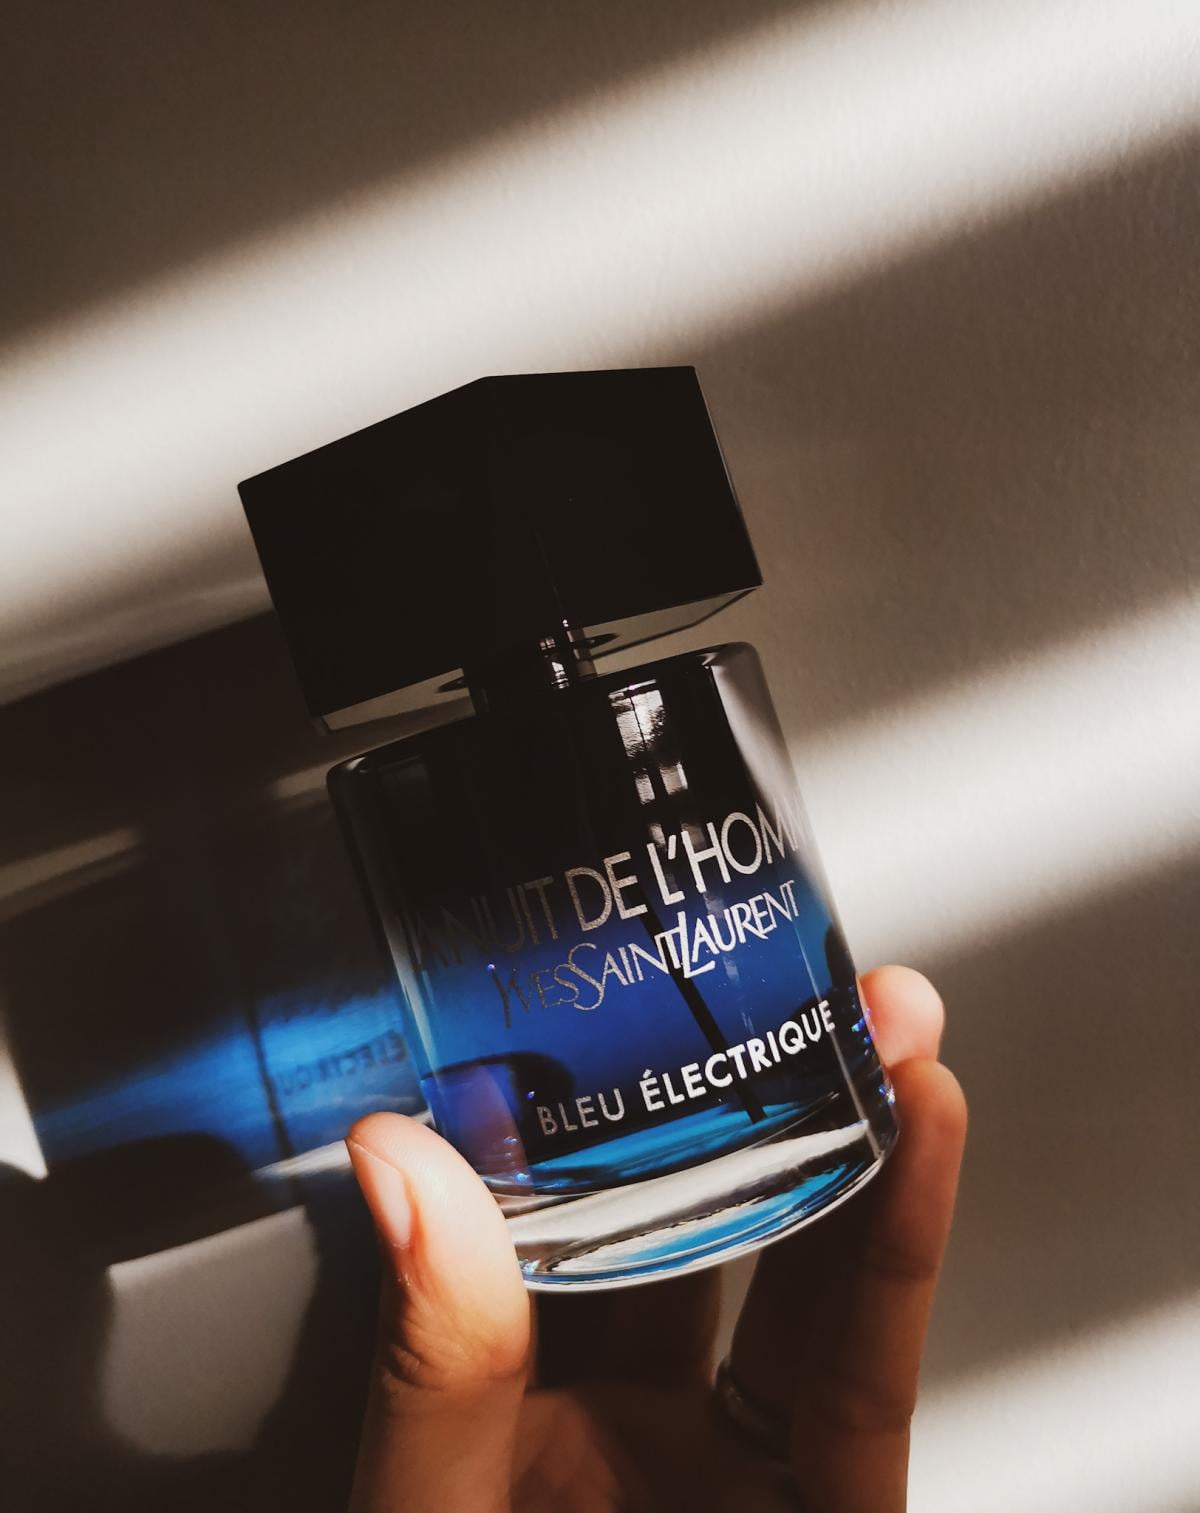 Yves Saint Laurent Men's La Nuit De L'Homme EDT Spray 1.35 oz Fragrances  3365440643574 - Fragrances & Beauty, La Nuit De L'Homme - Jomashop